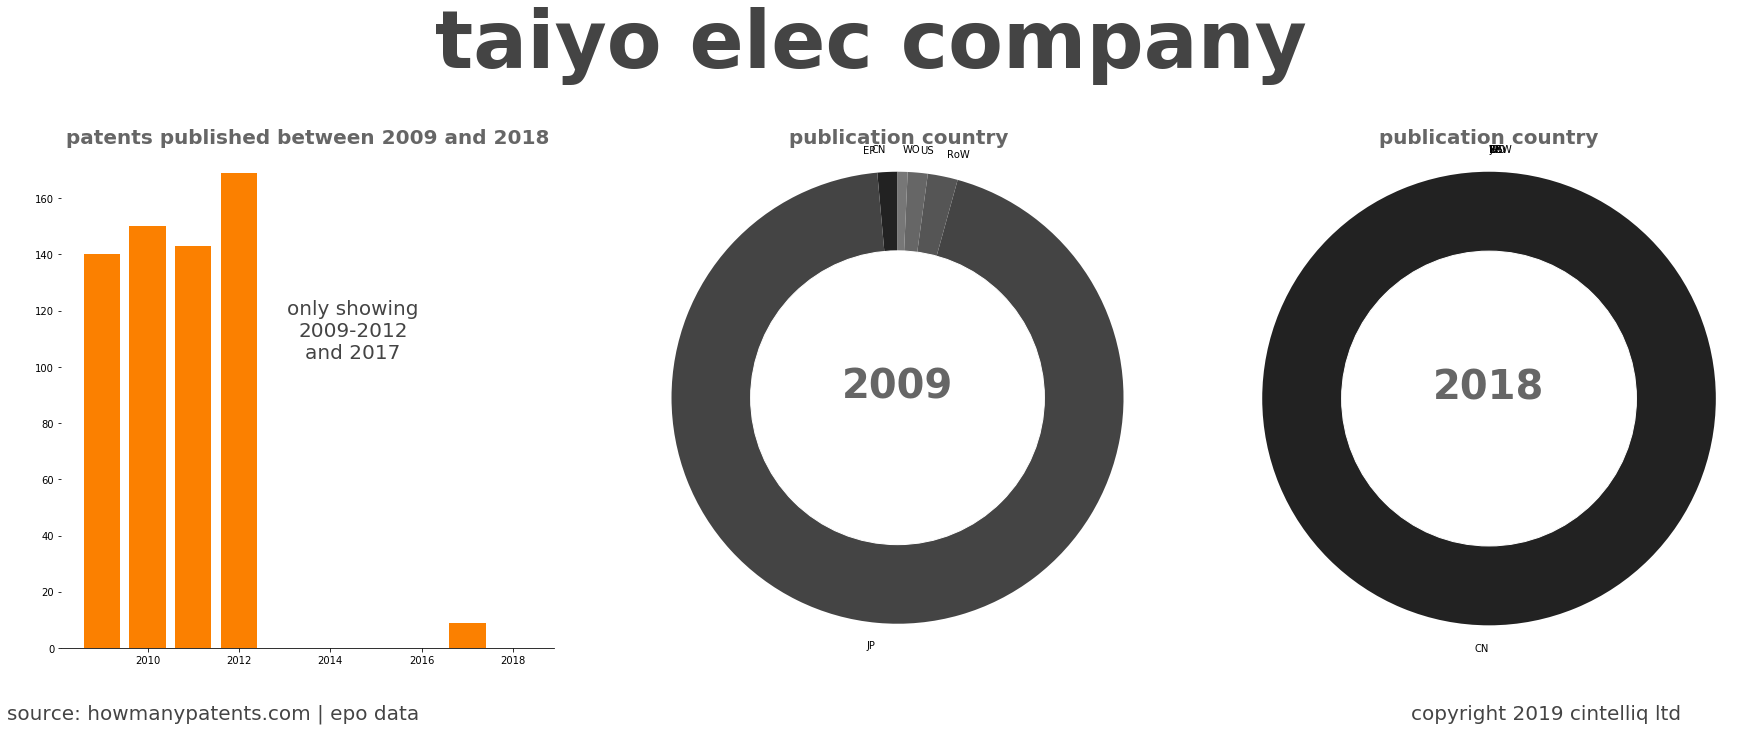 summary of patents for Taiyo Elec Company